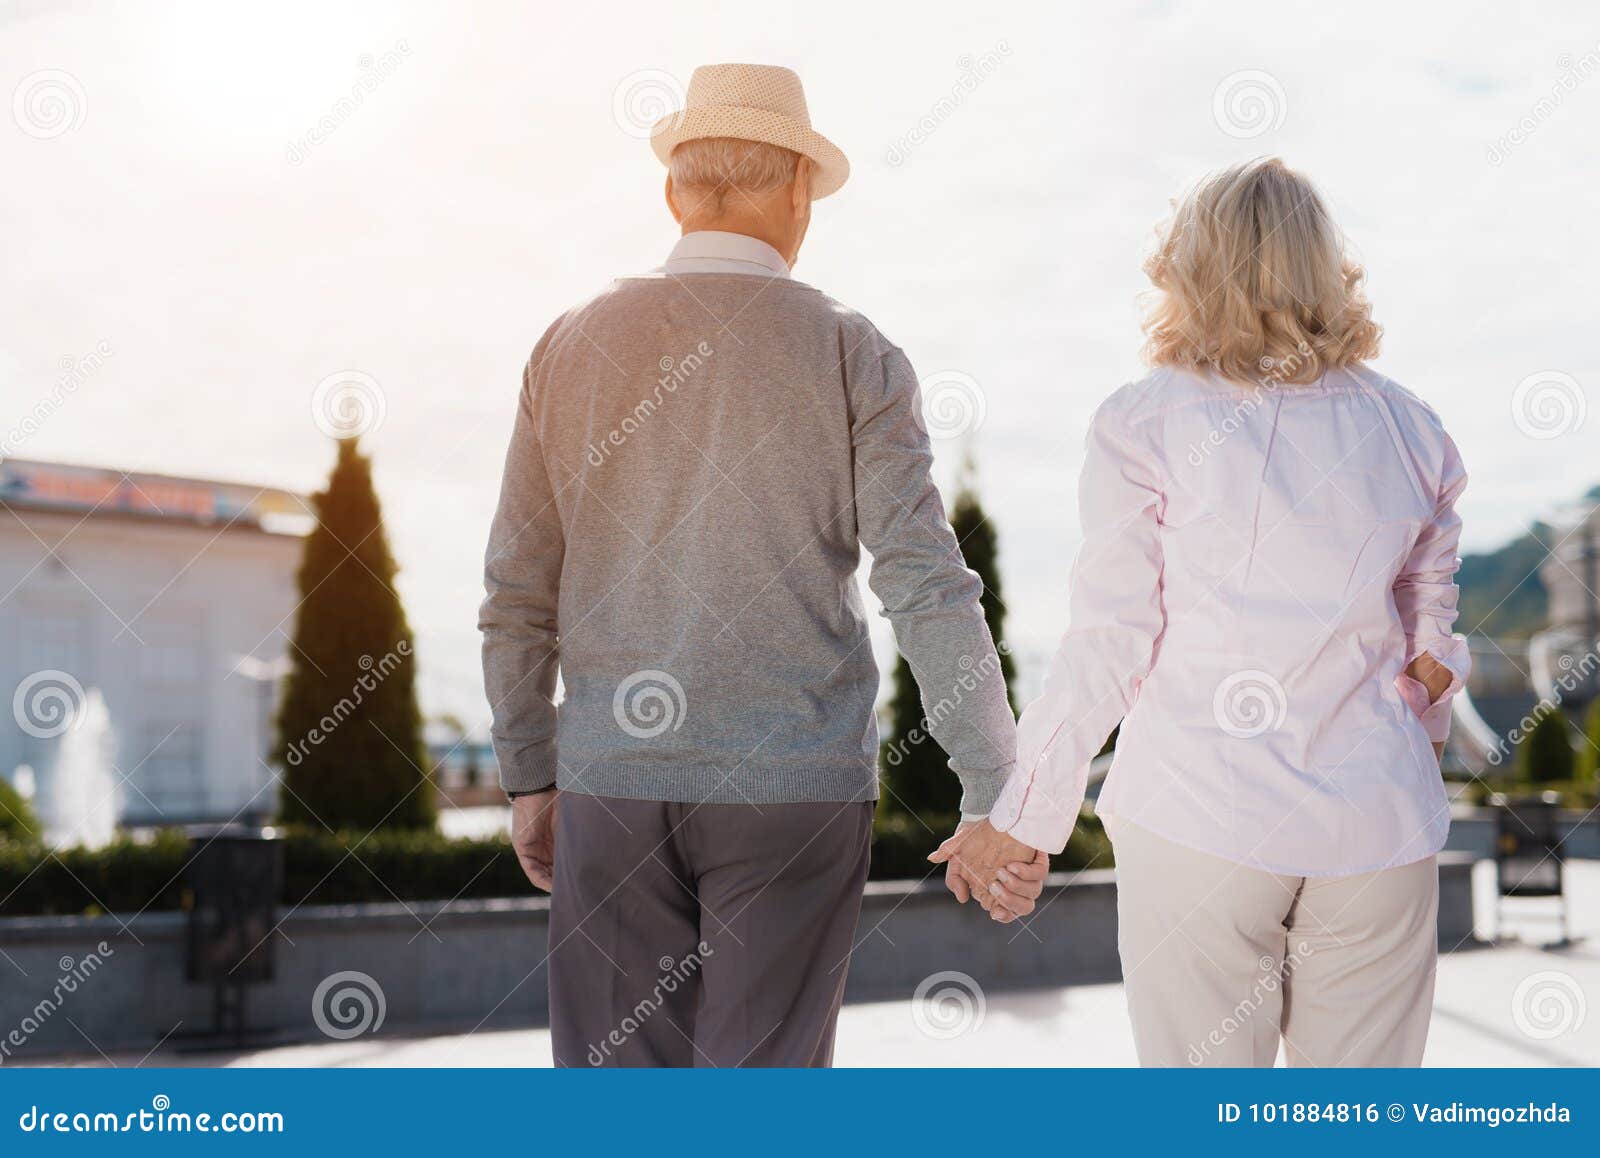 Пожилые держатся за руки. Старики идут за руку. Пожилая пара за руки. Пожилые мужчина с женщиной держатся за руки. Пожилые мужчина и женщина идут за руку.